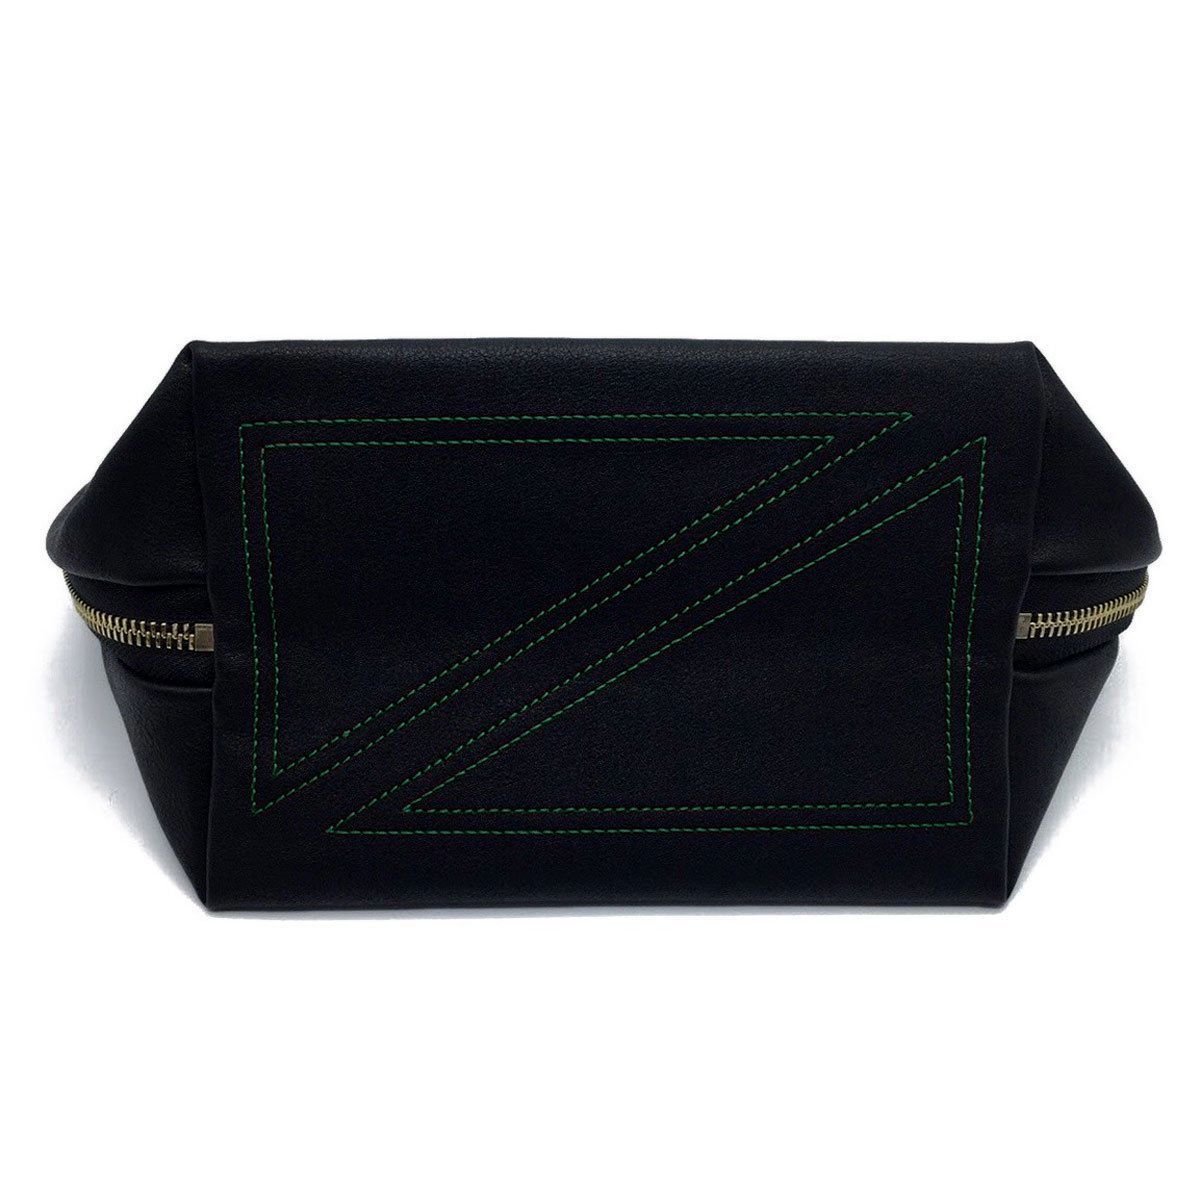 color: Satin Black Fabric with Emerald Green Interior; alt: Signature Medium Size Makeup Bag | KUSSHI